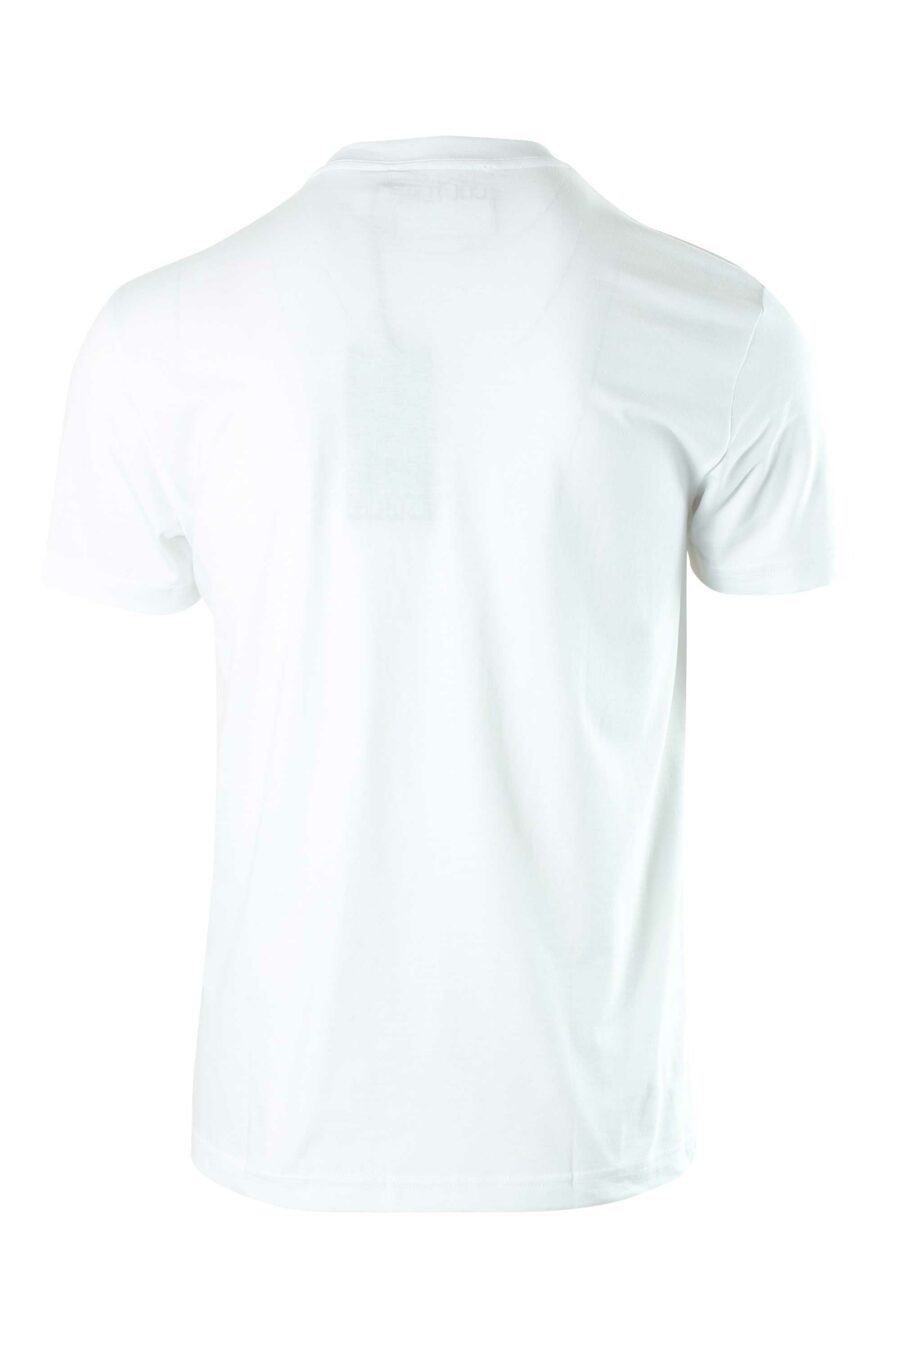 Camiseta blanca con minilogo redondo plateado - 8052019236798 2